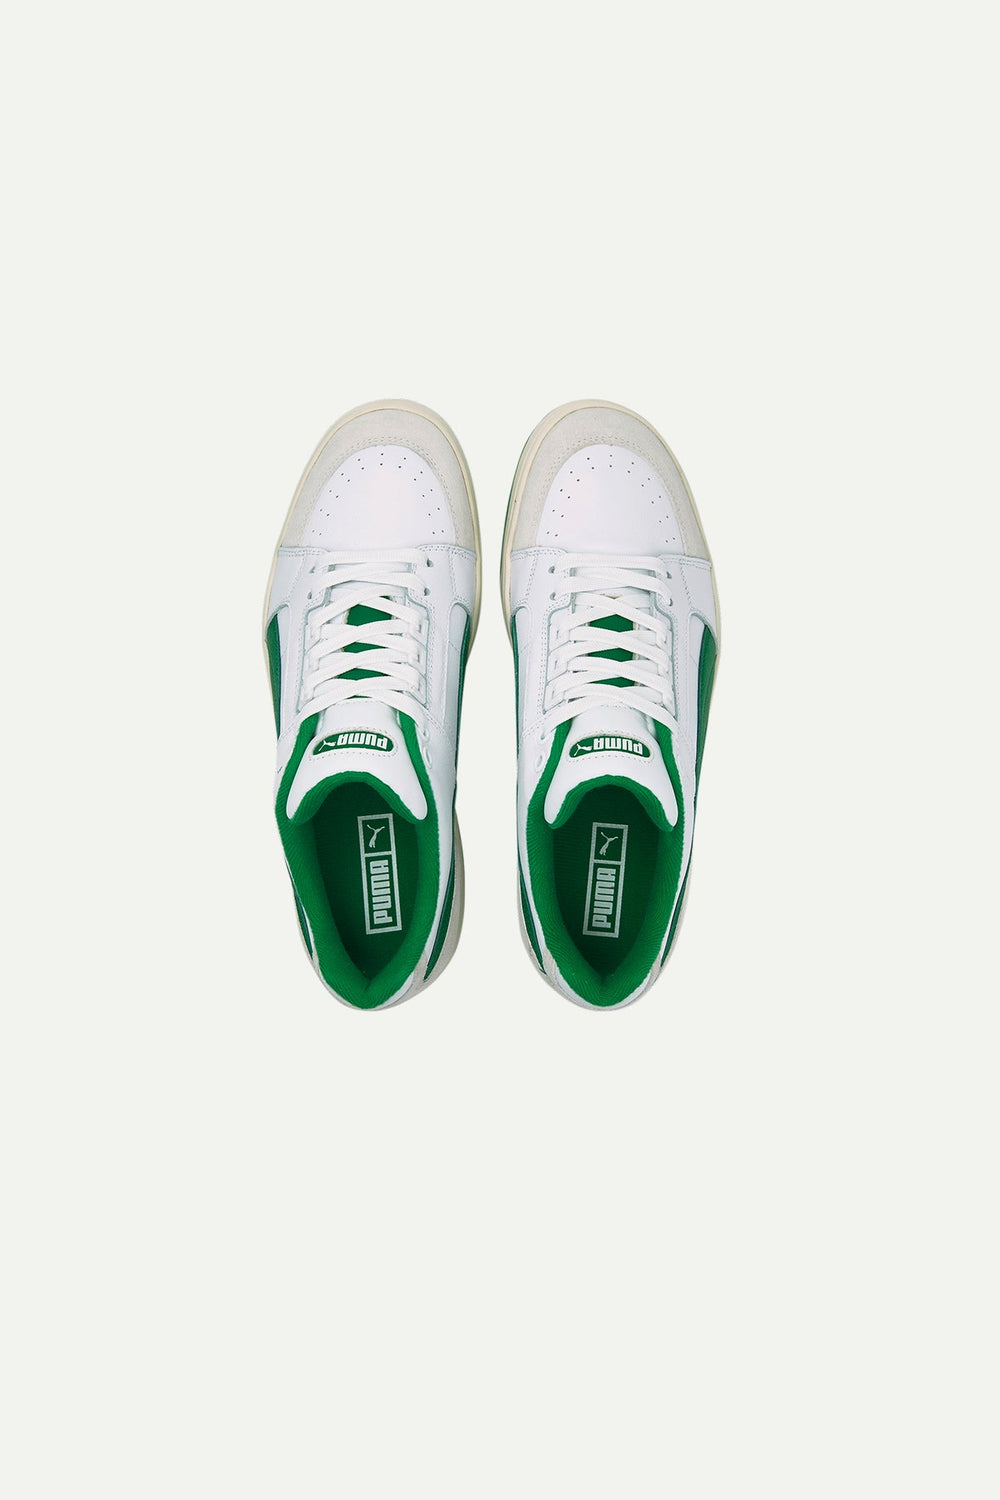 נעלי Slipstream Lo Retro בצבע לבן ירוק - Puma